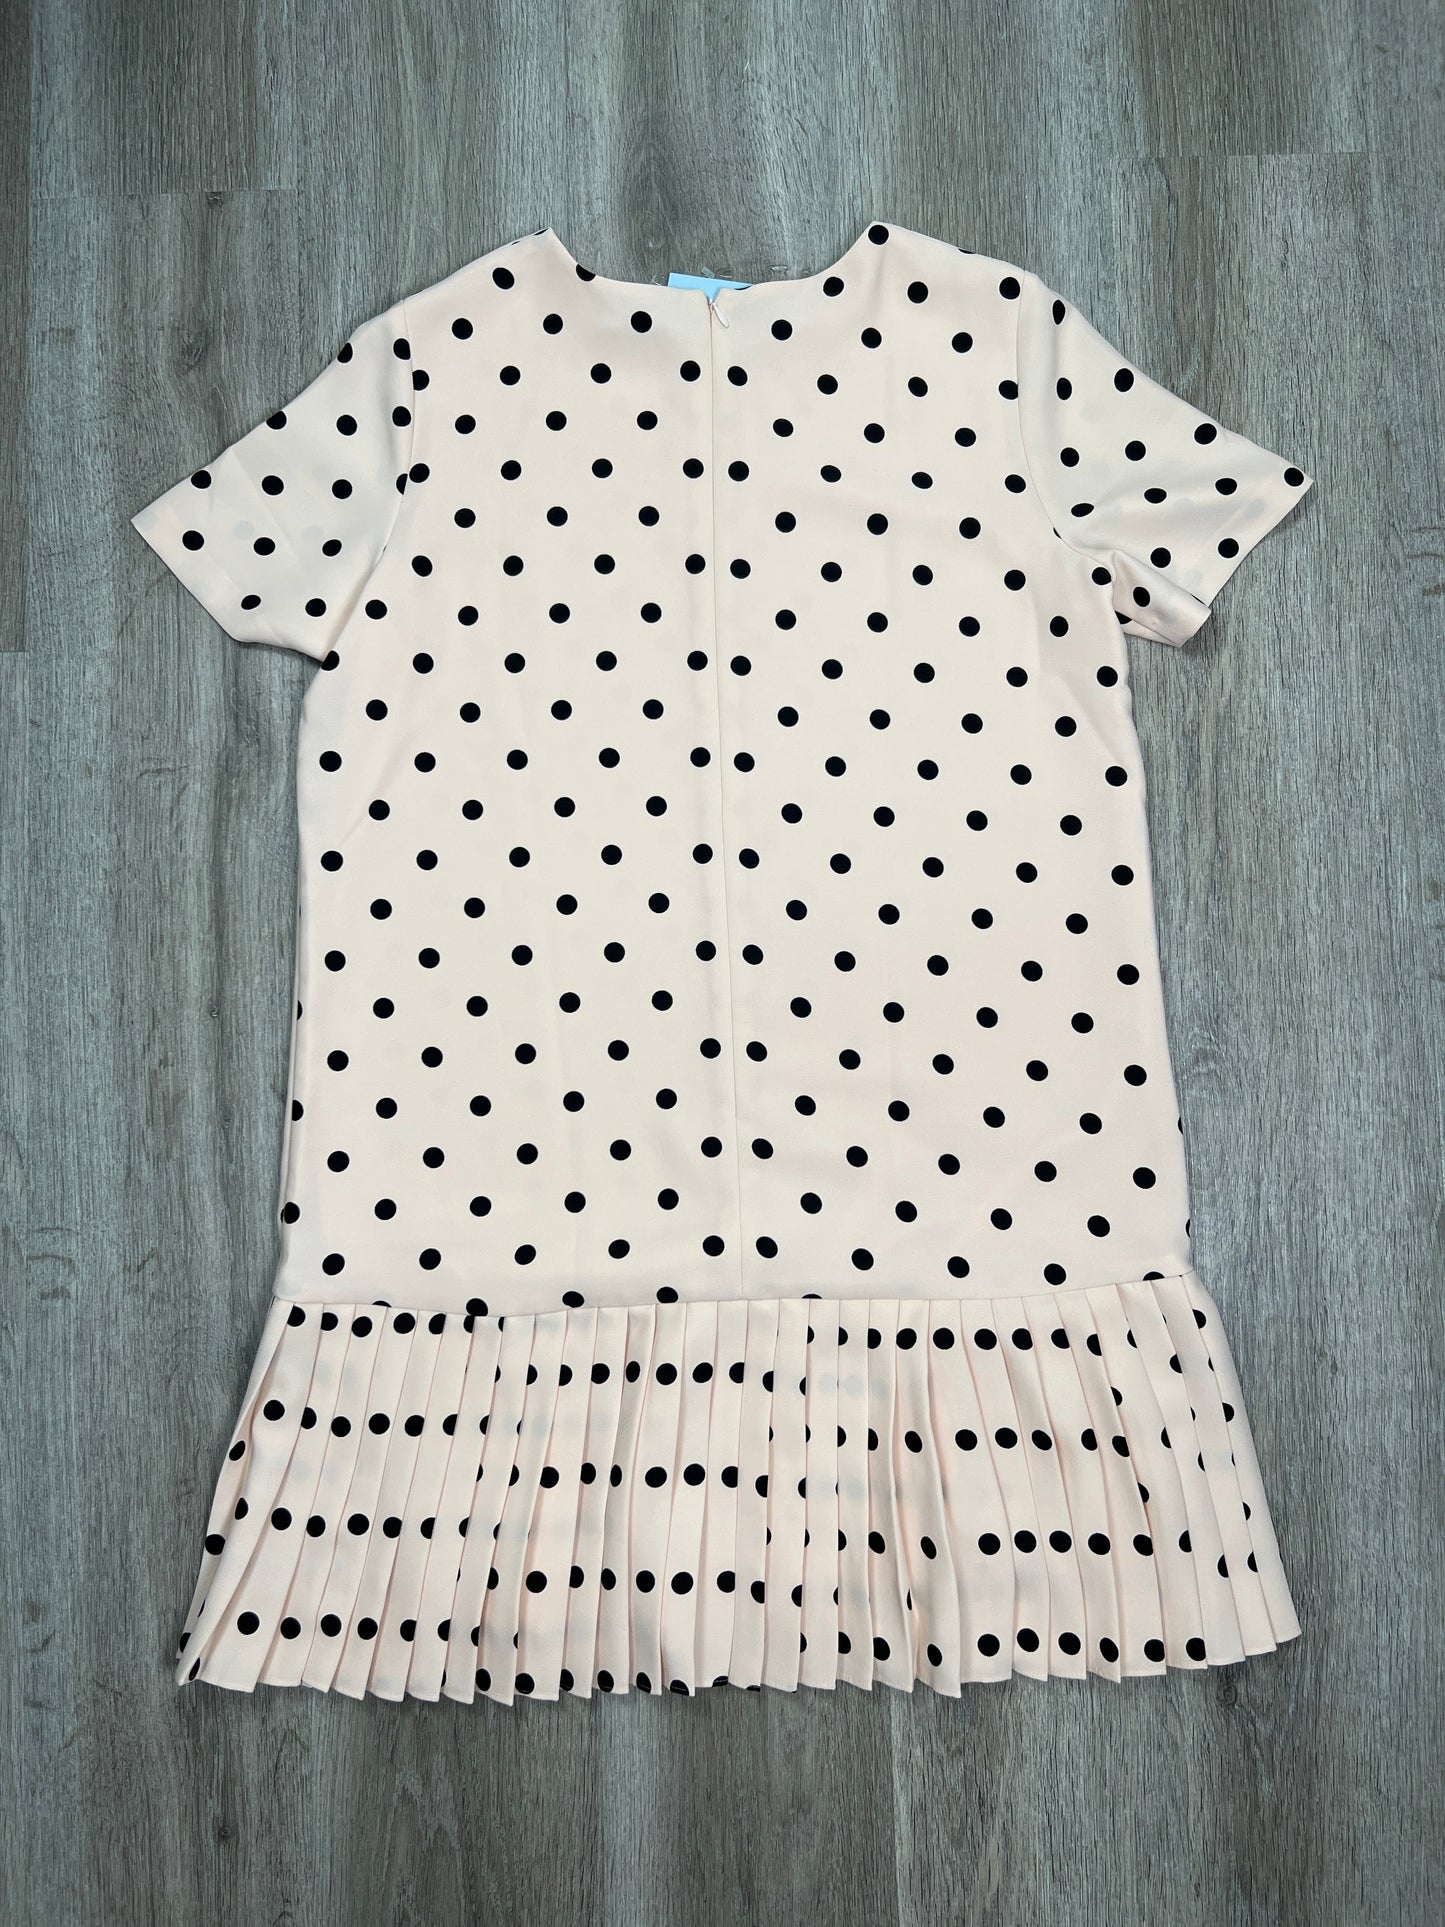 Polkadot Pattern Dress Casual Short Ann Taylor, Size Petite L